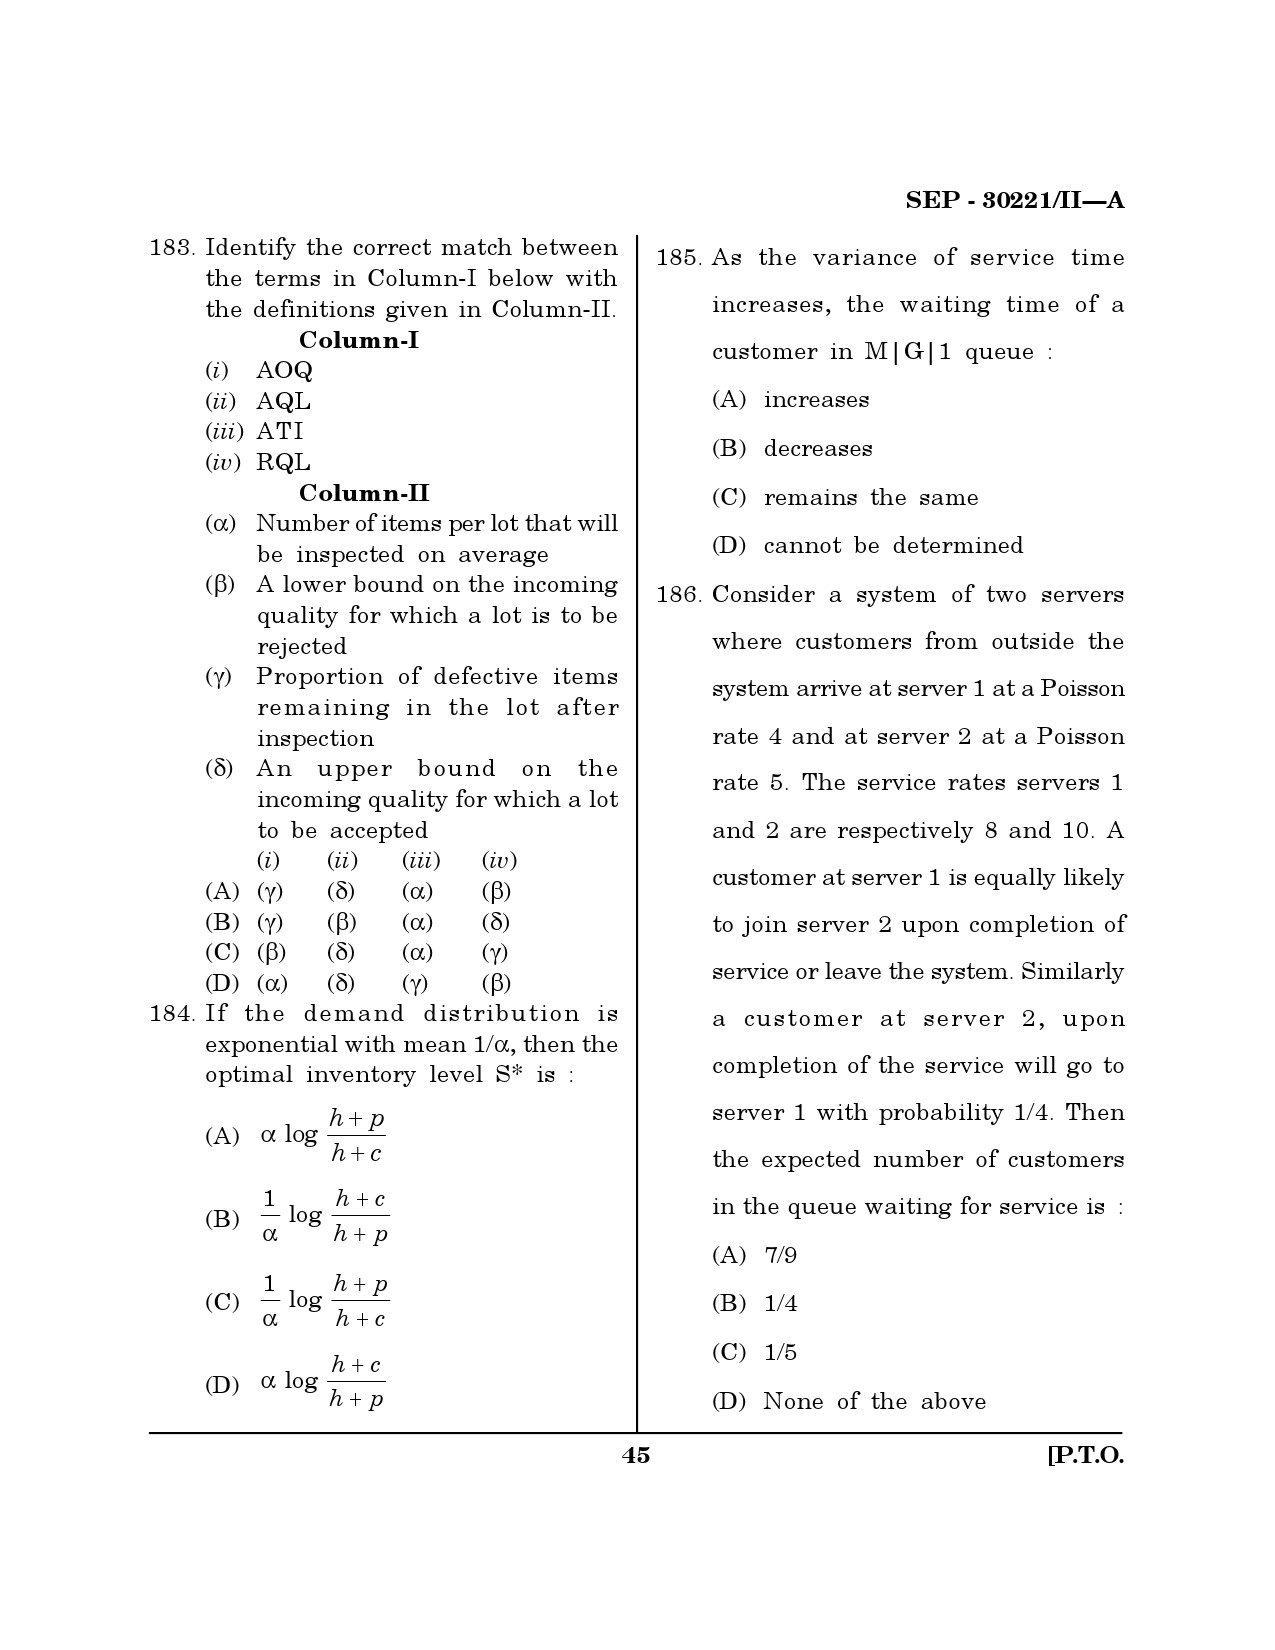 Maharashtra SET Mathematical Sciences Exam Question Paper September 2021 44